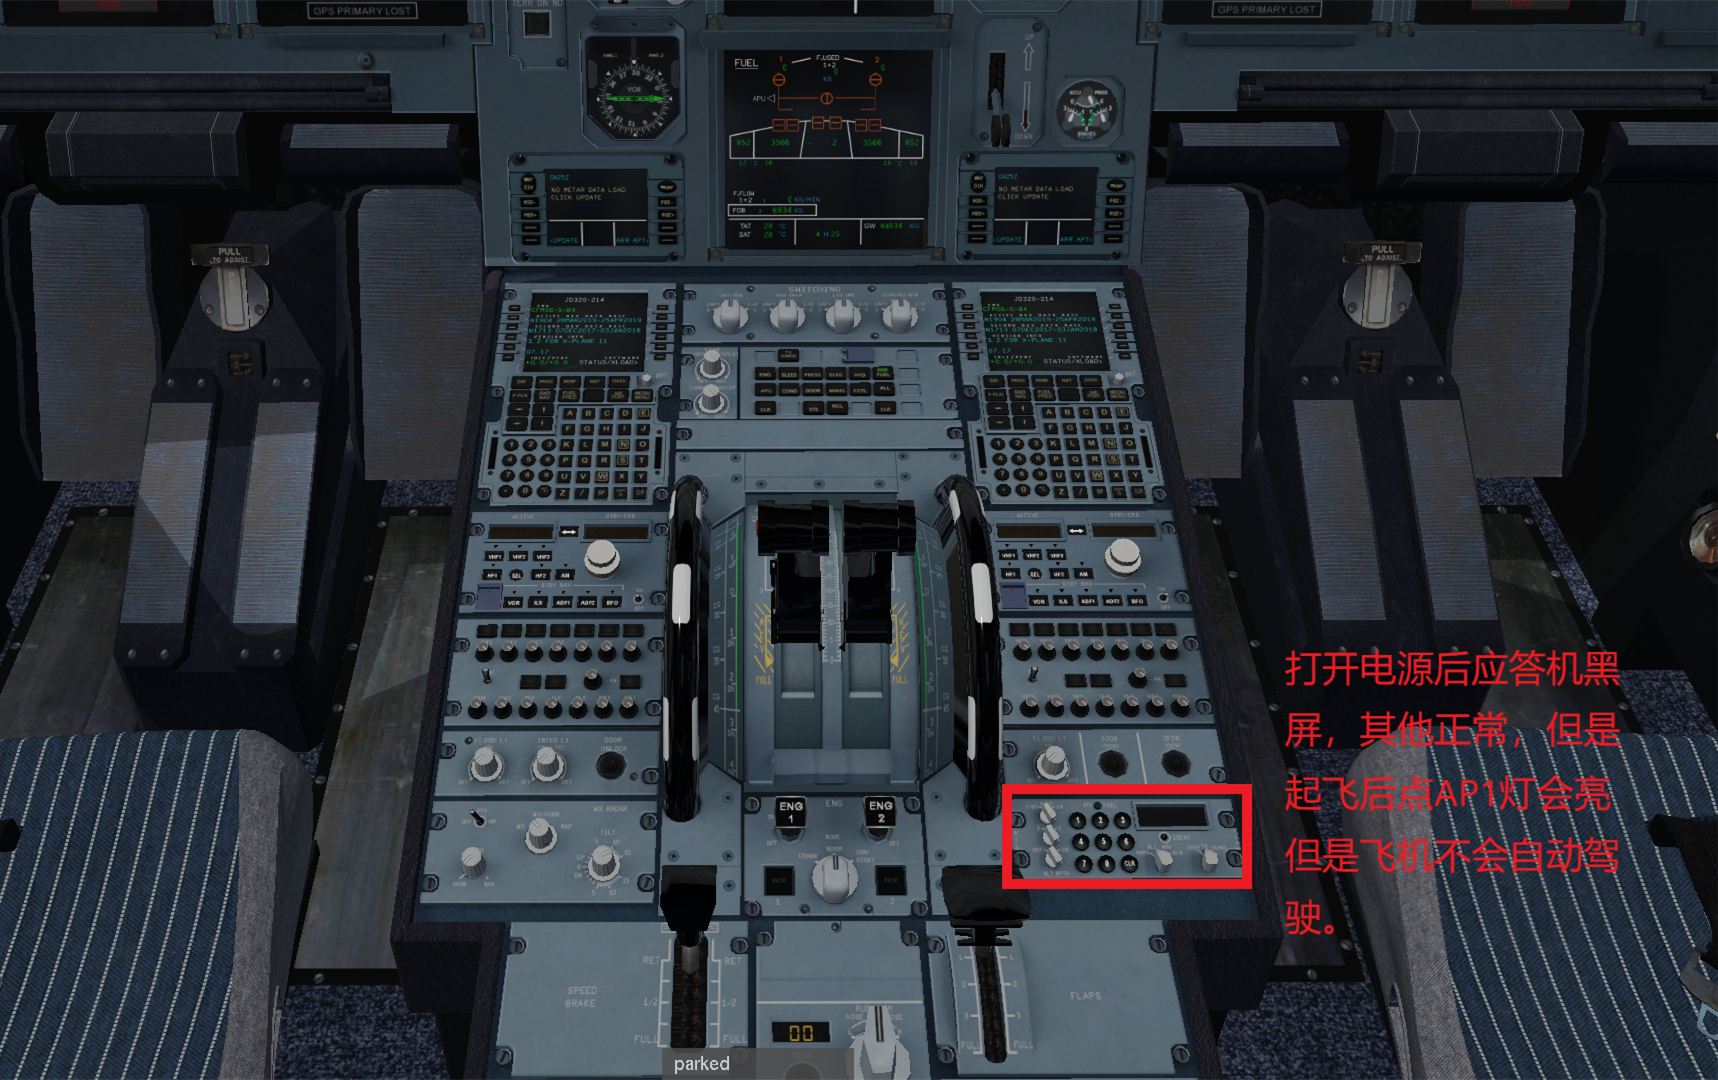 JARD A320  不能导航应答机黑屏的解决办法-4250 